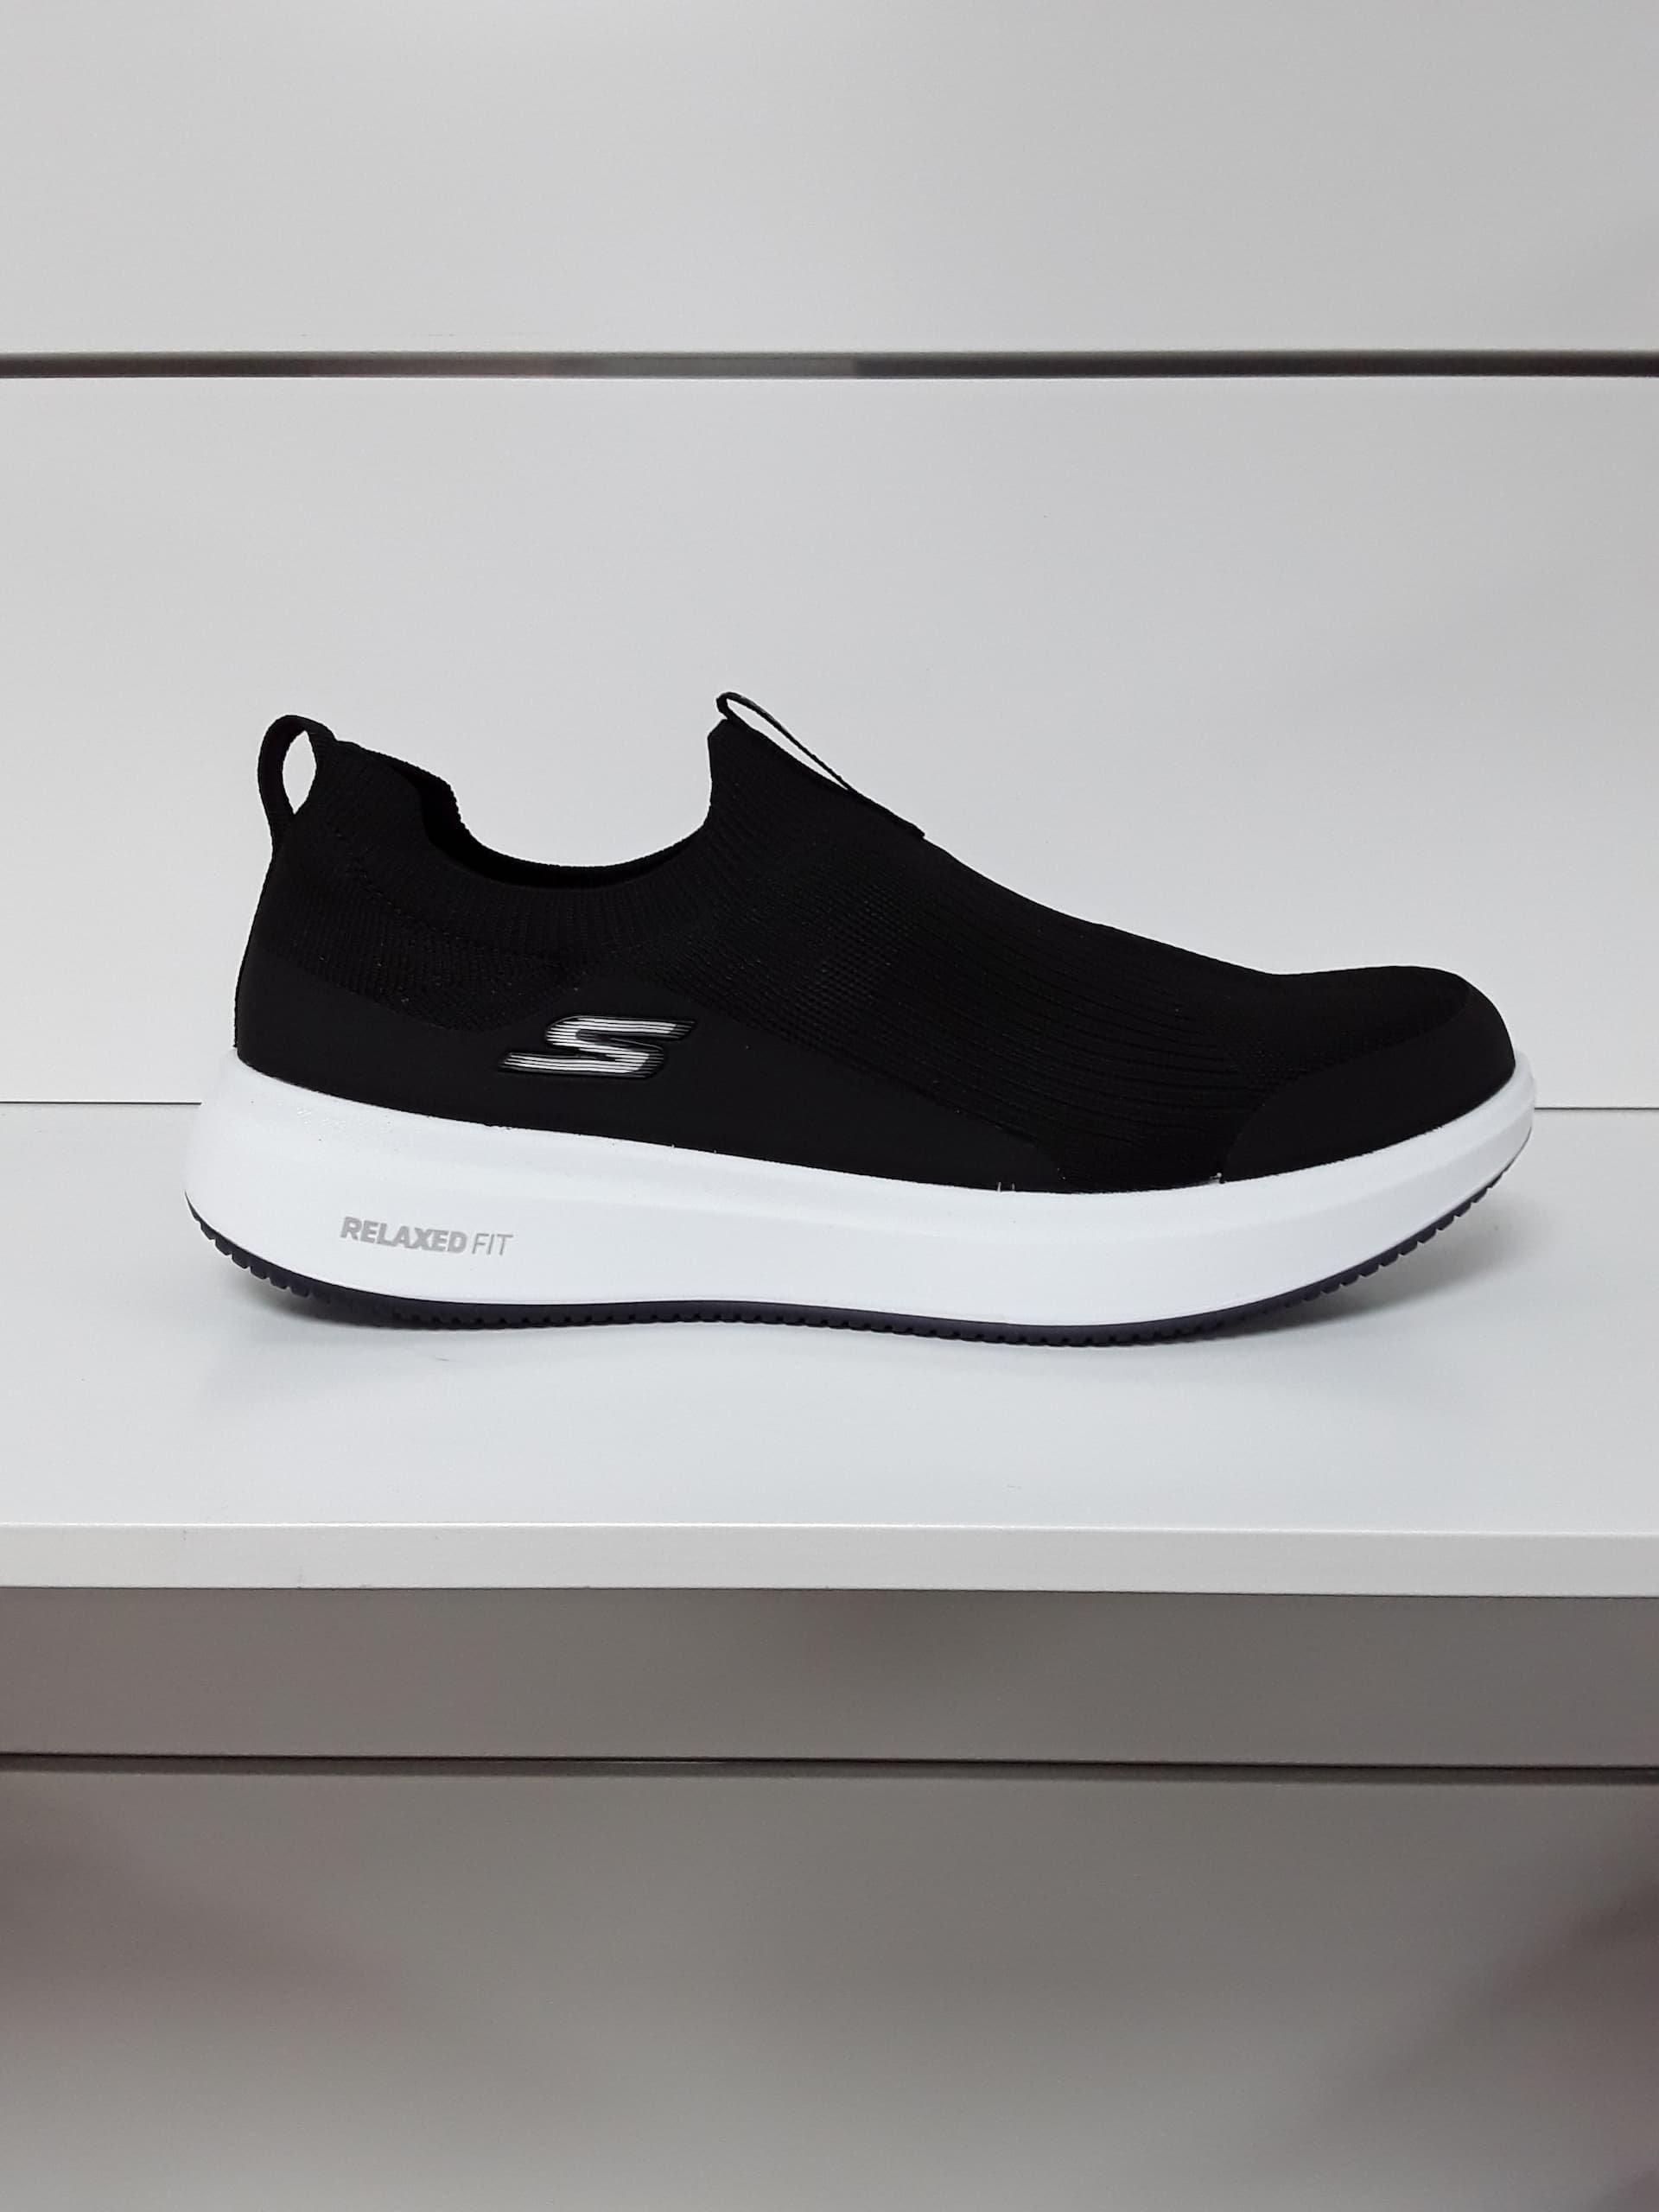 mærke navn blanding bar Skechers sko på tilbud til damer, mænd og børn: Se udvalget her